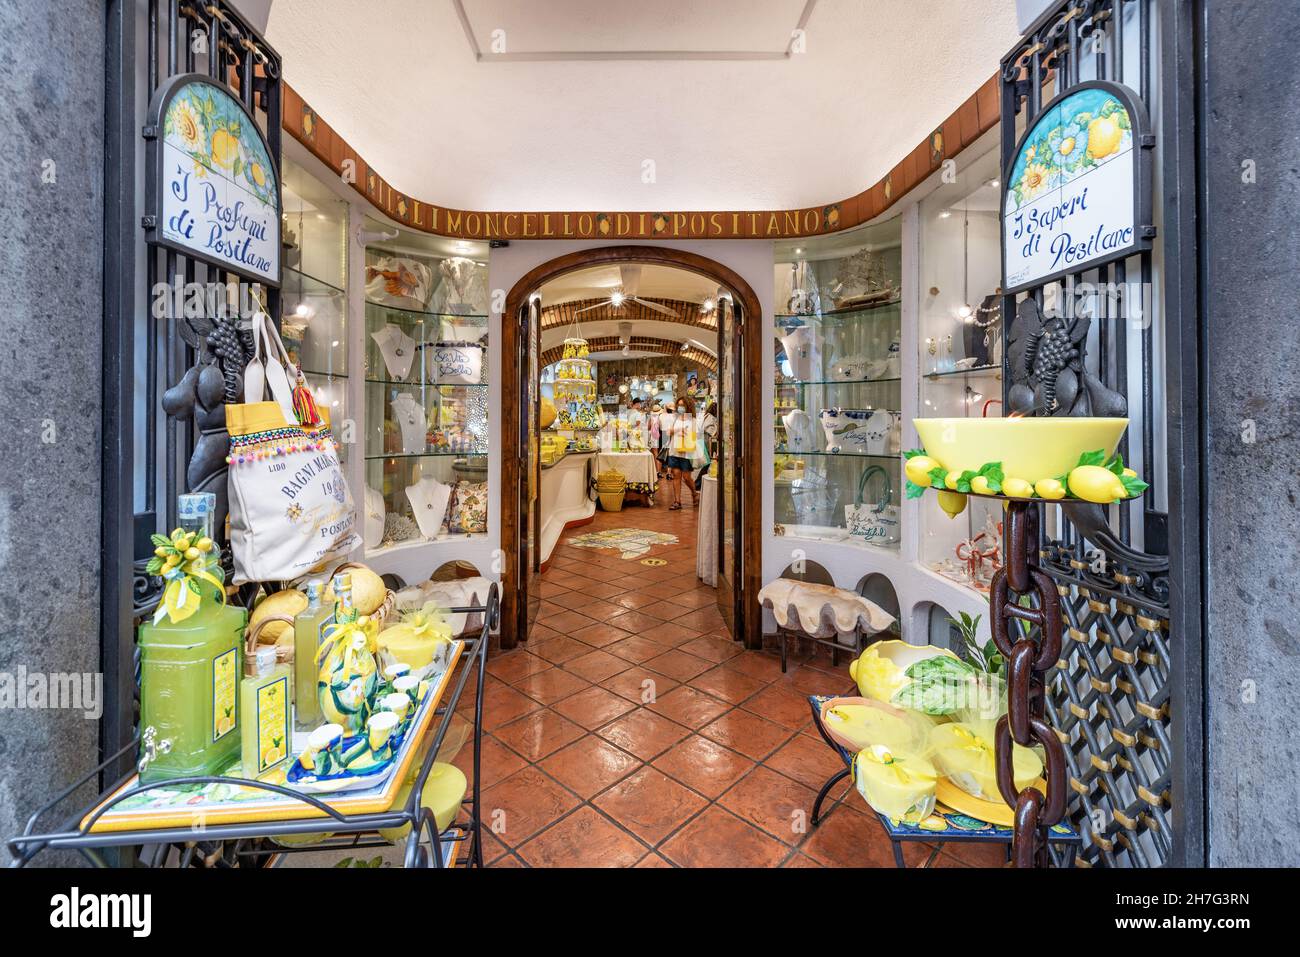 Naples, Positano, Italie - juillet 01 2021 : magasin traditionnel, coloré et caractéristique de spiritueux et de souvenirs à Positano, côte amalfitaine, Italie. Banque D'Images